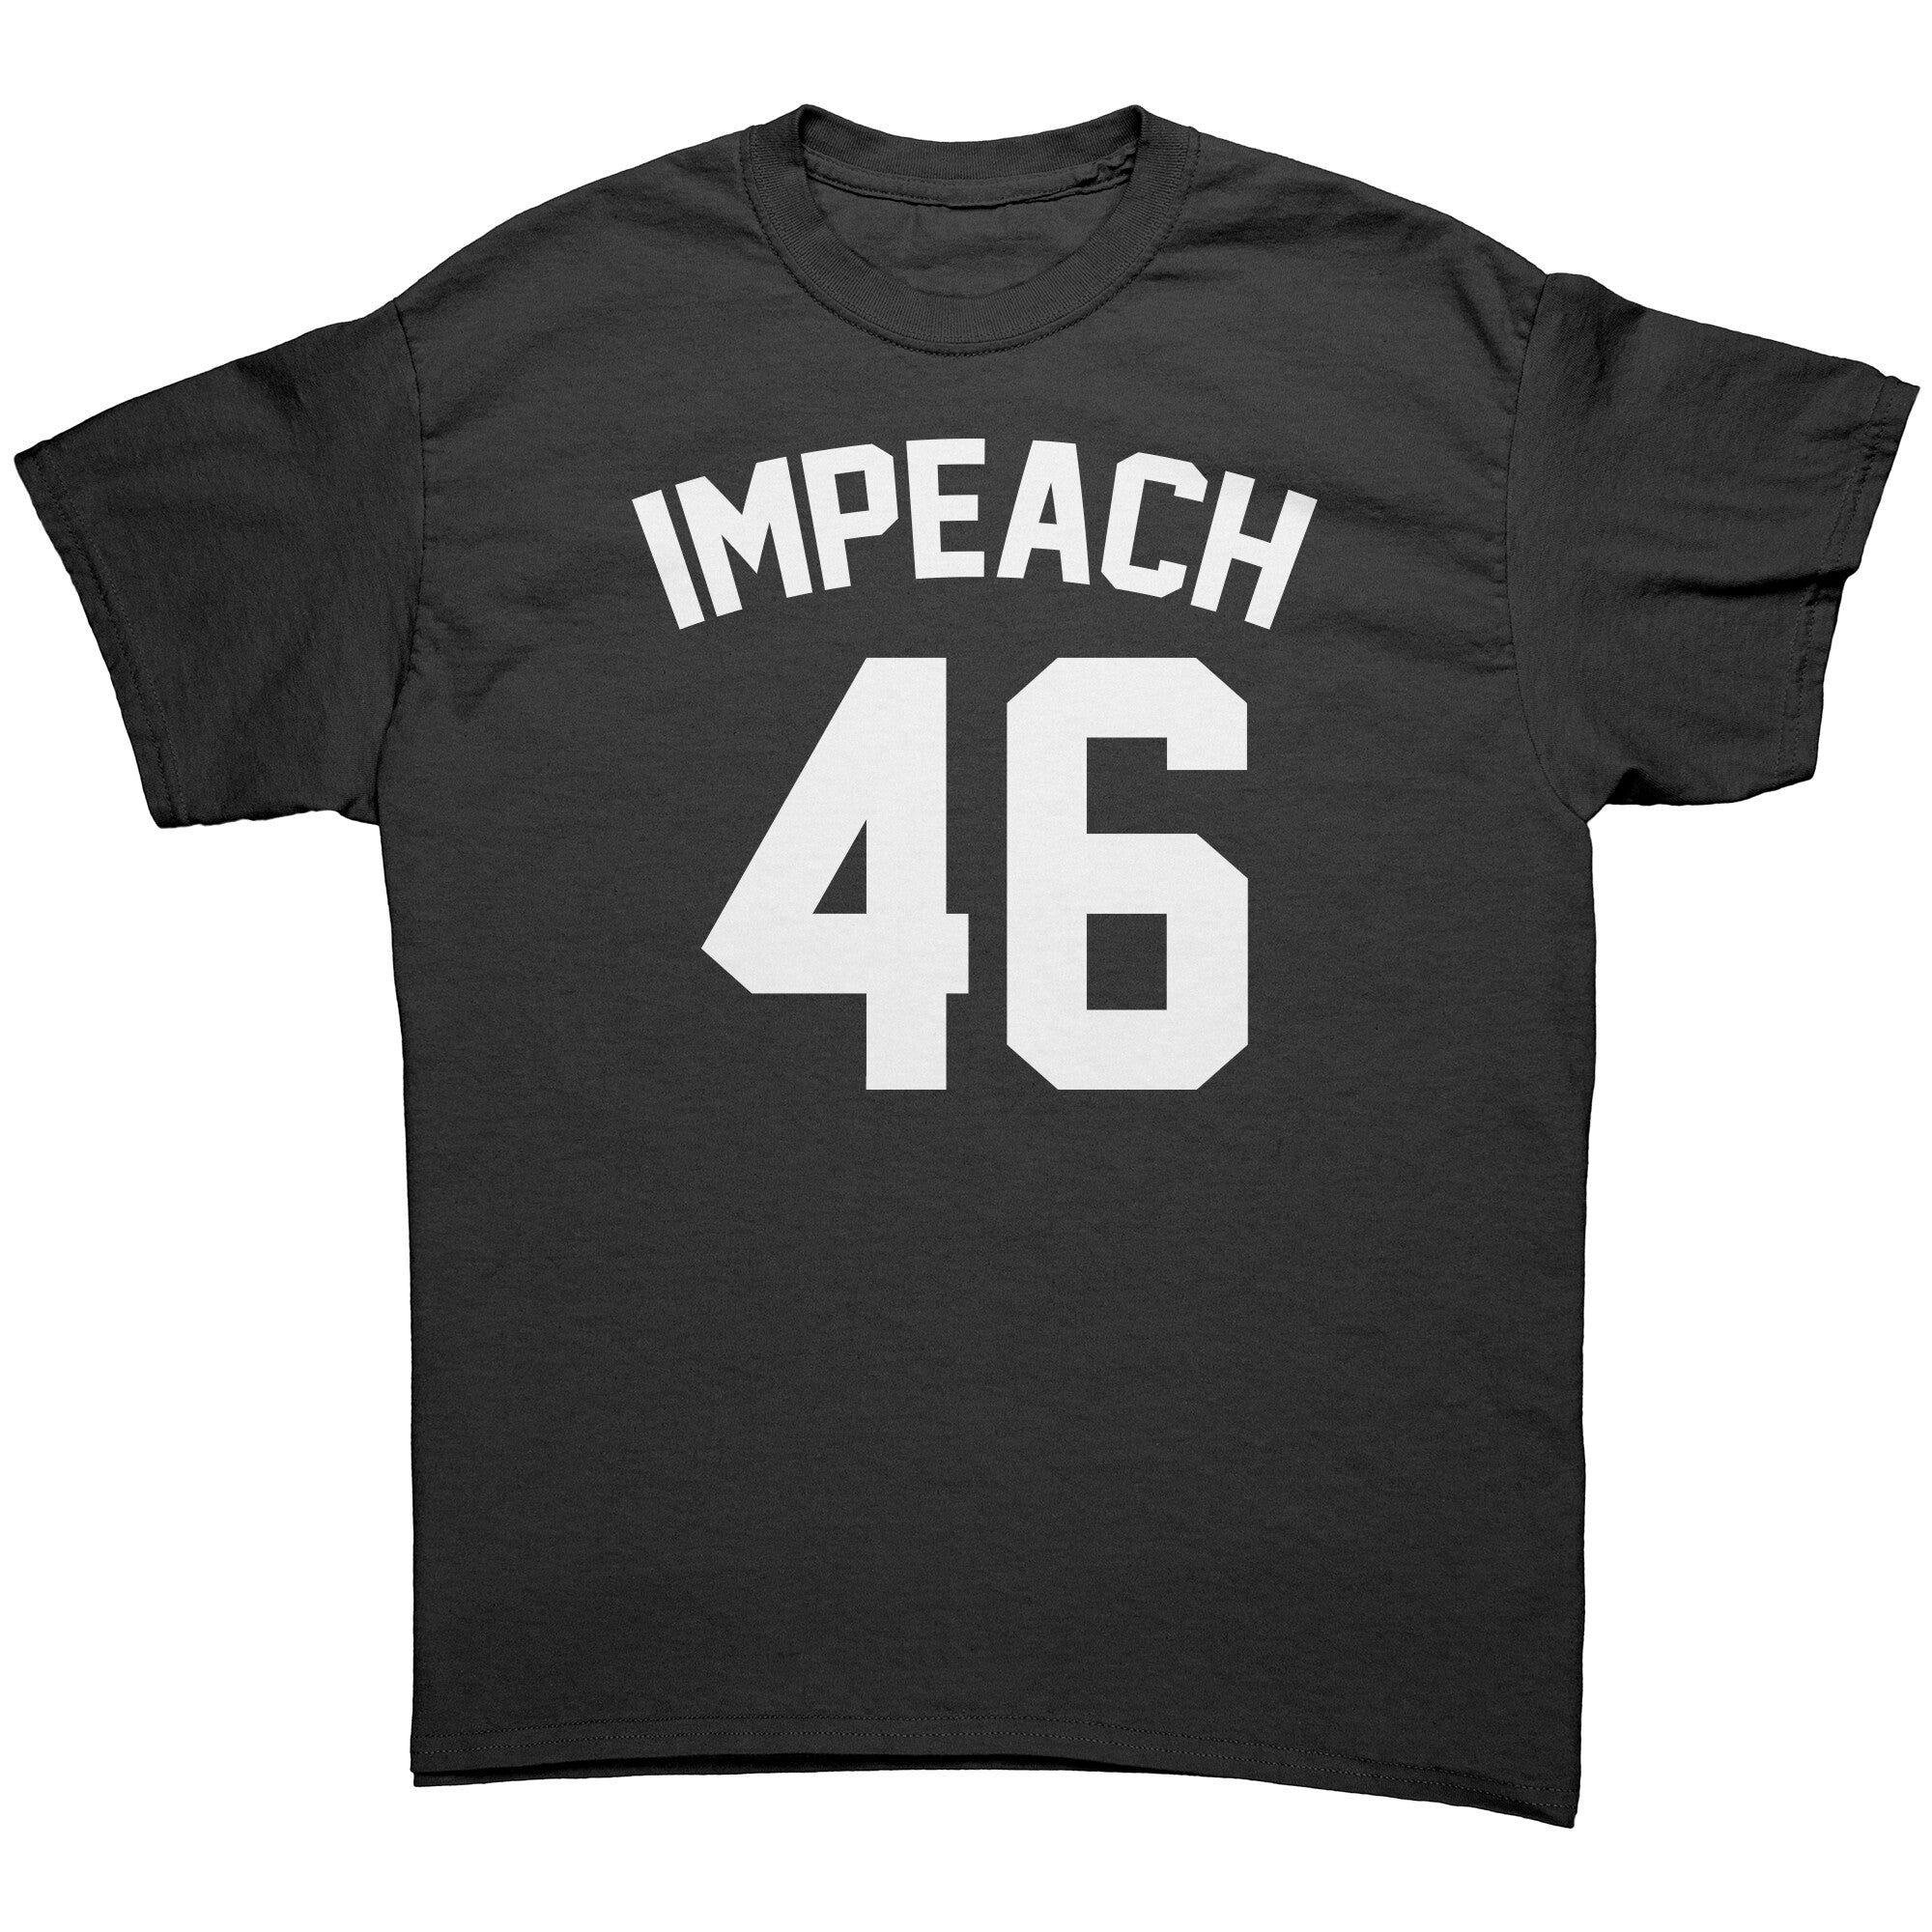 Impeach 46 -Apparel | Drunk America 